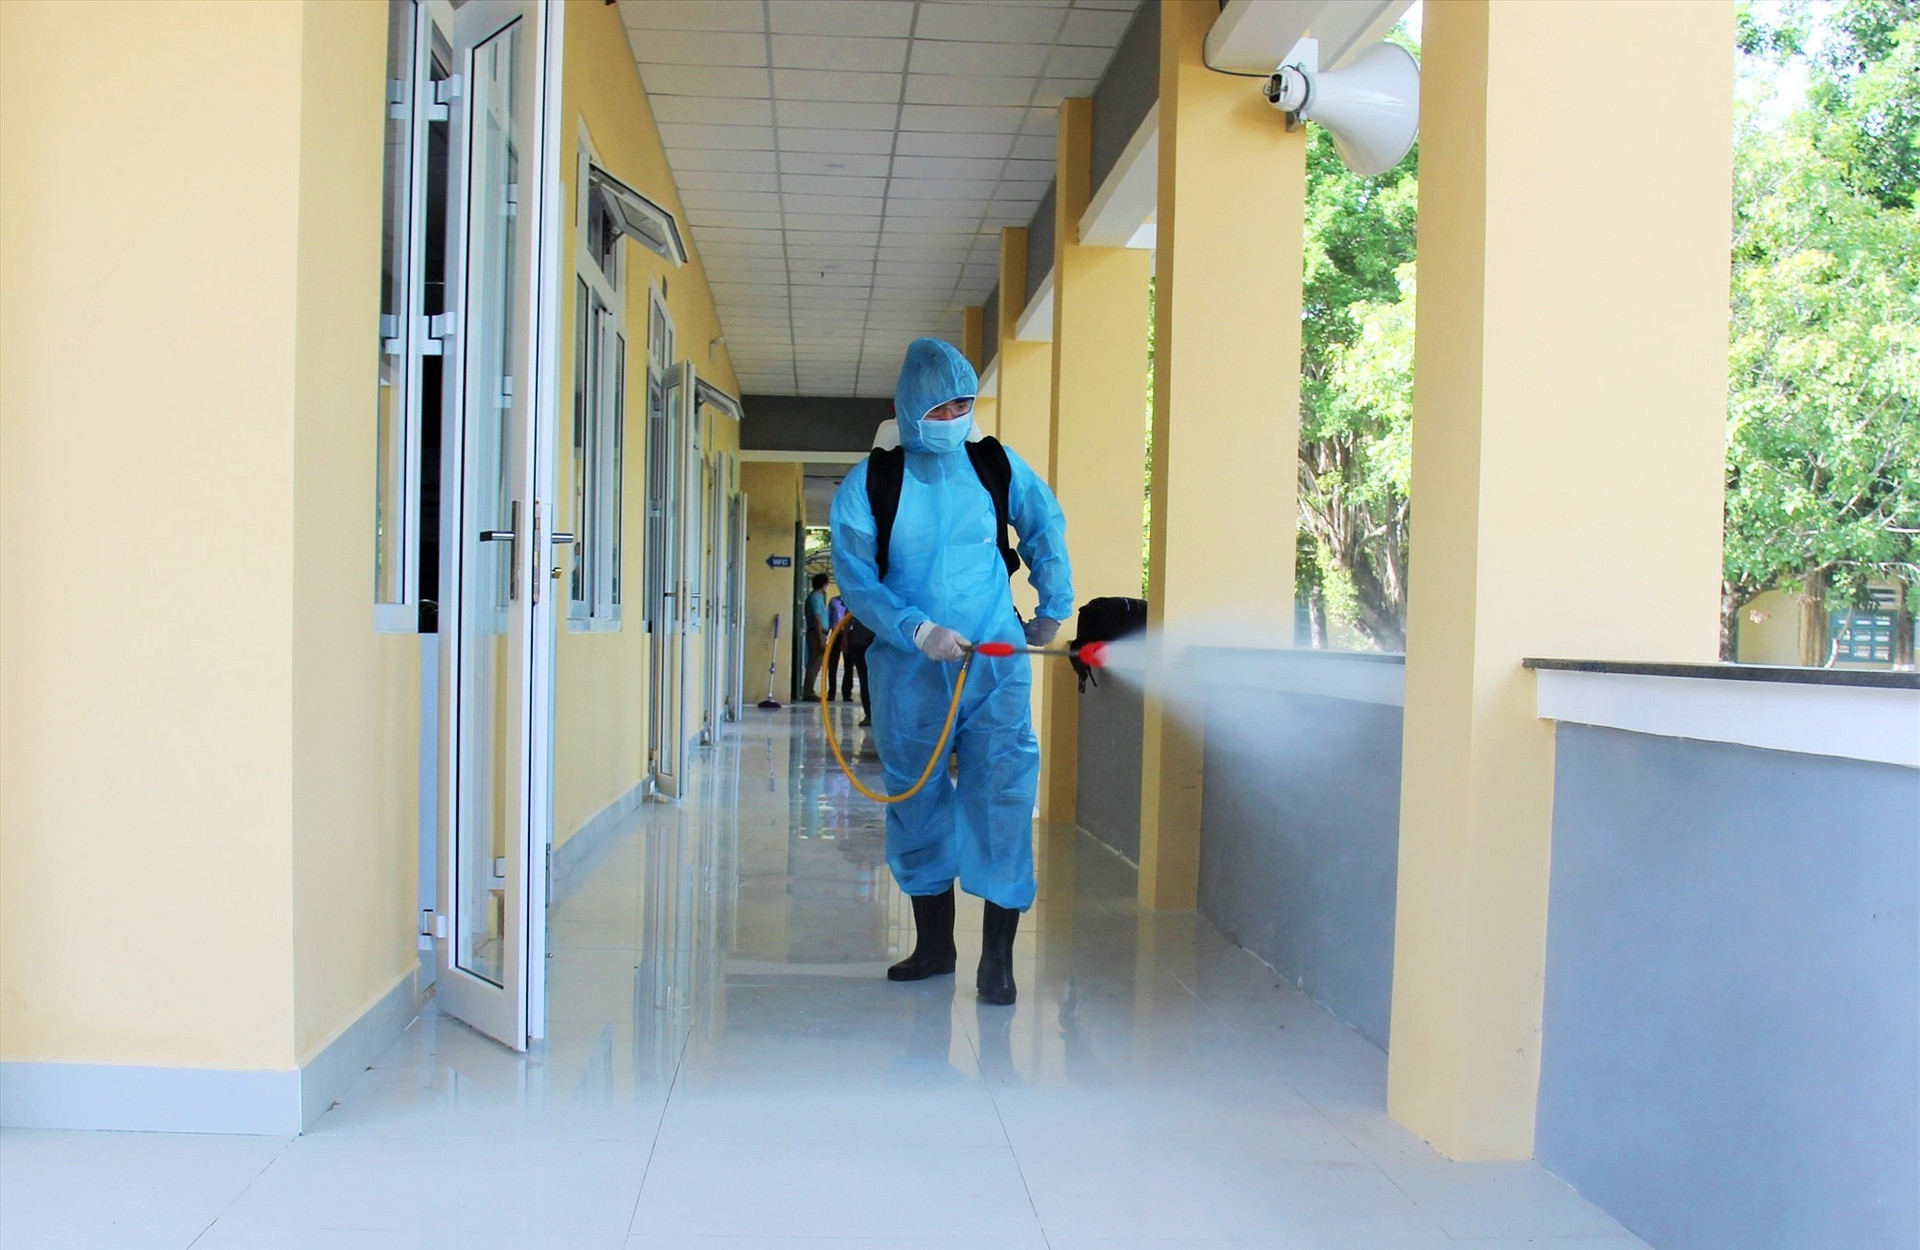 Phun hóa chất khử khuẩn tại điểm thi tốt nghiệp THPT năm 2020 trên địa bàn Phú Ninh. Ảnh: THANH THẮNG